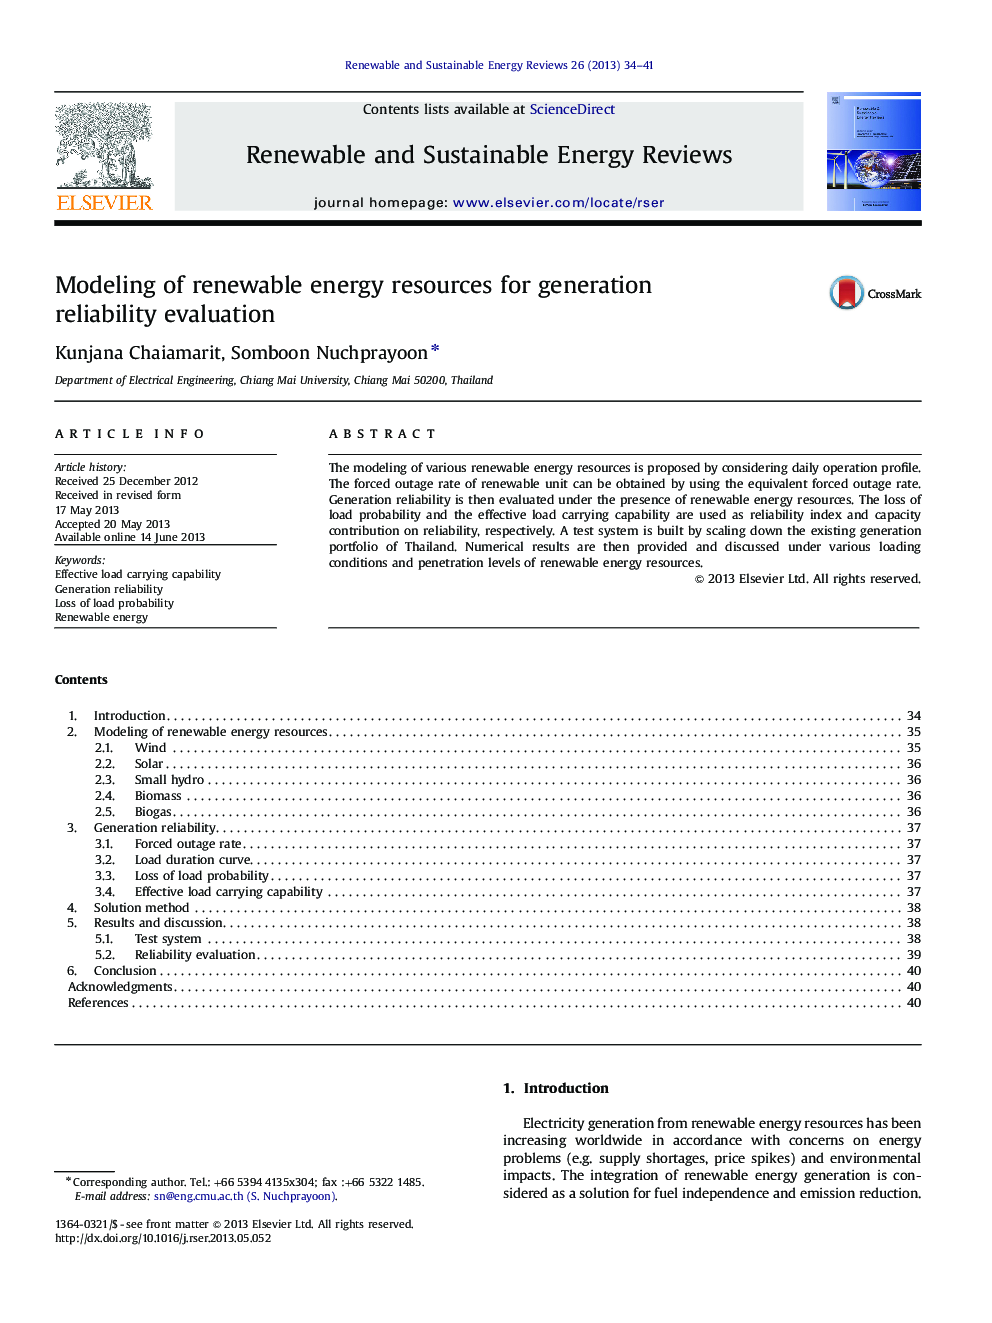 مدلسازی منابع انرژی تجدیدپذیر برای ارزیابی قابلیت اطمینان تولید 